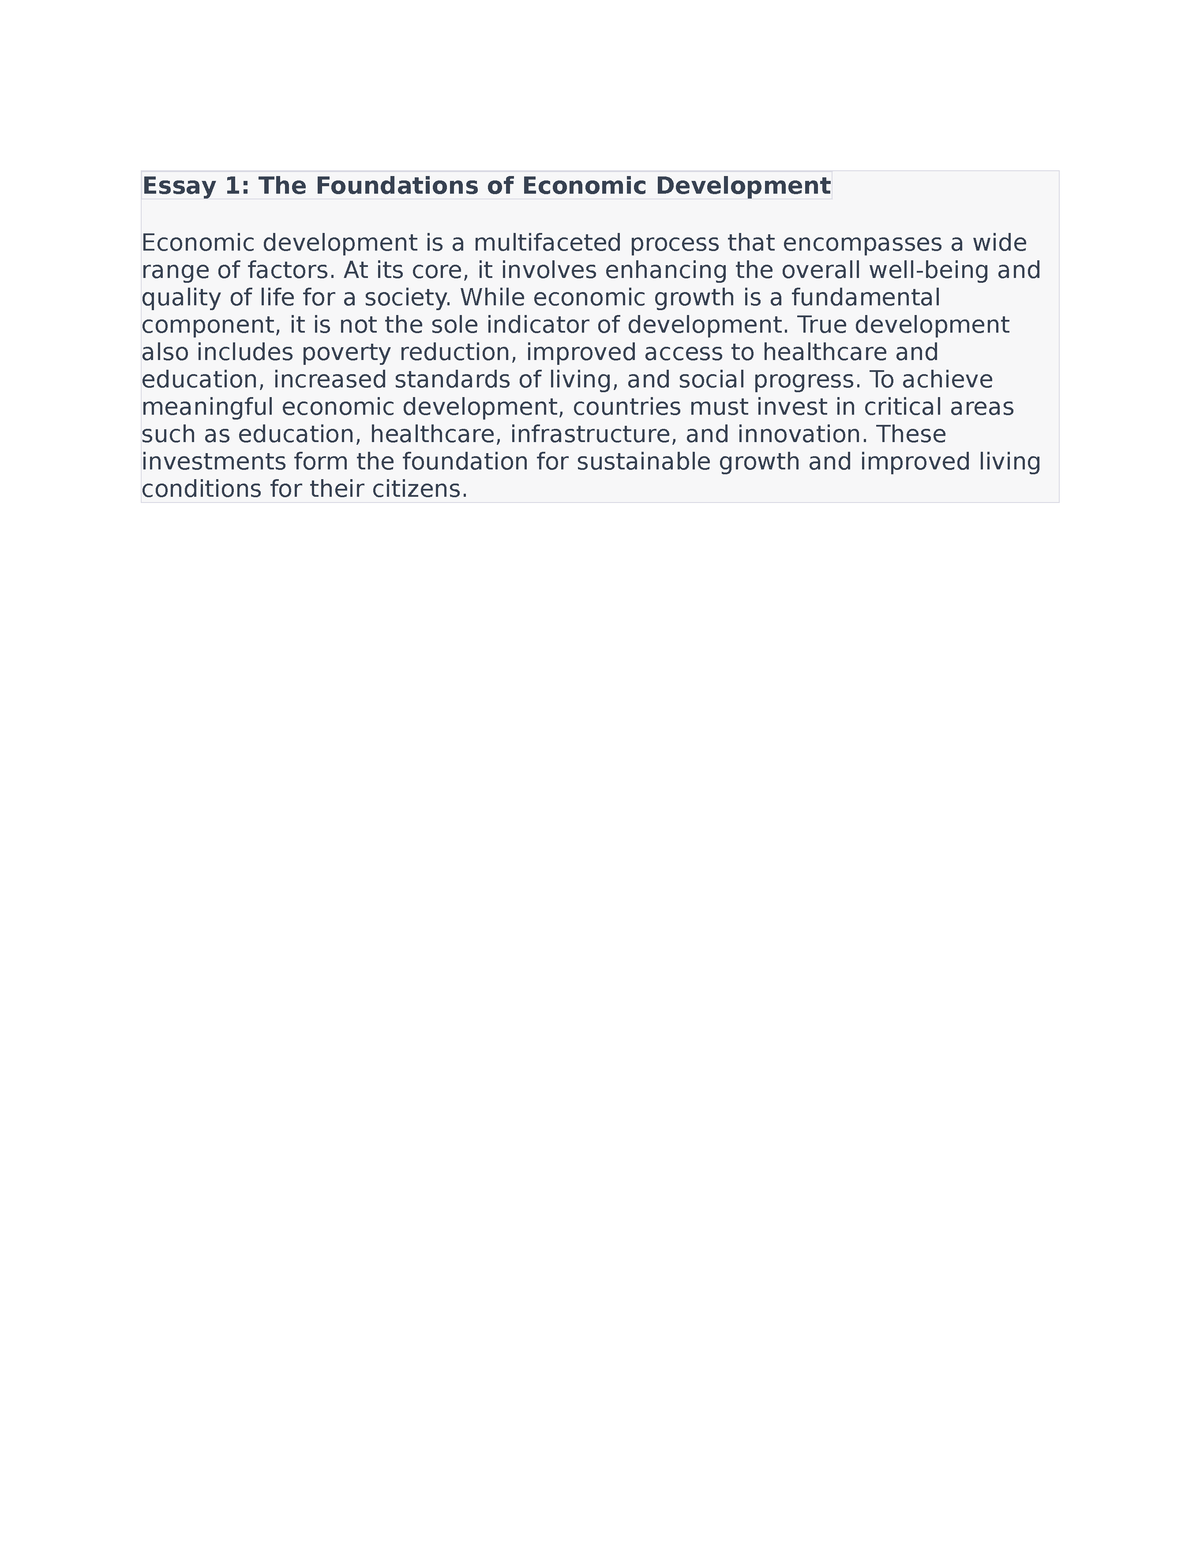 phd thesis topics in development economics